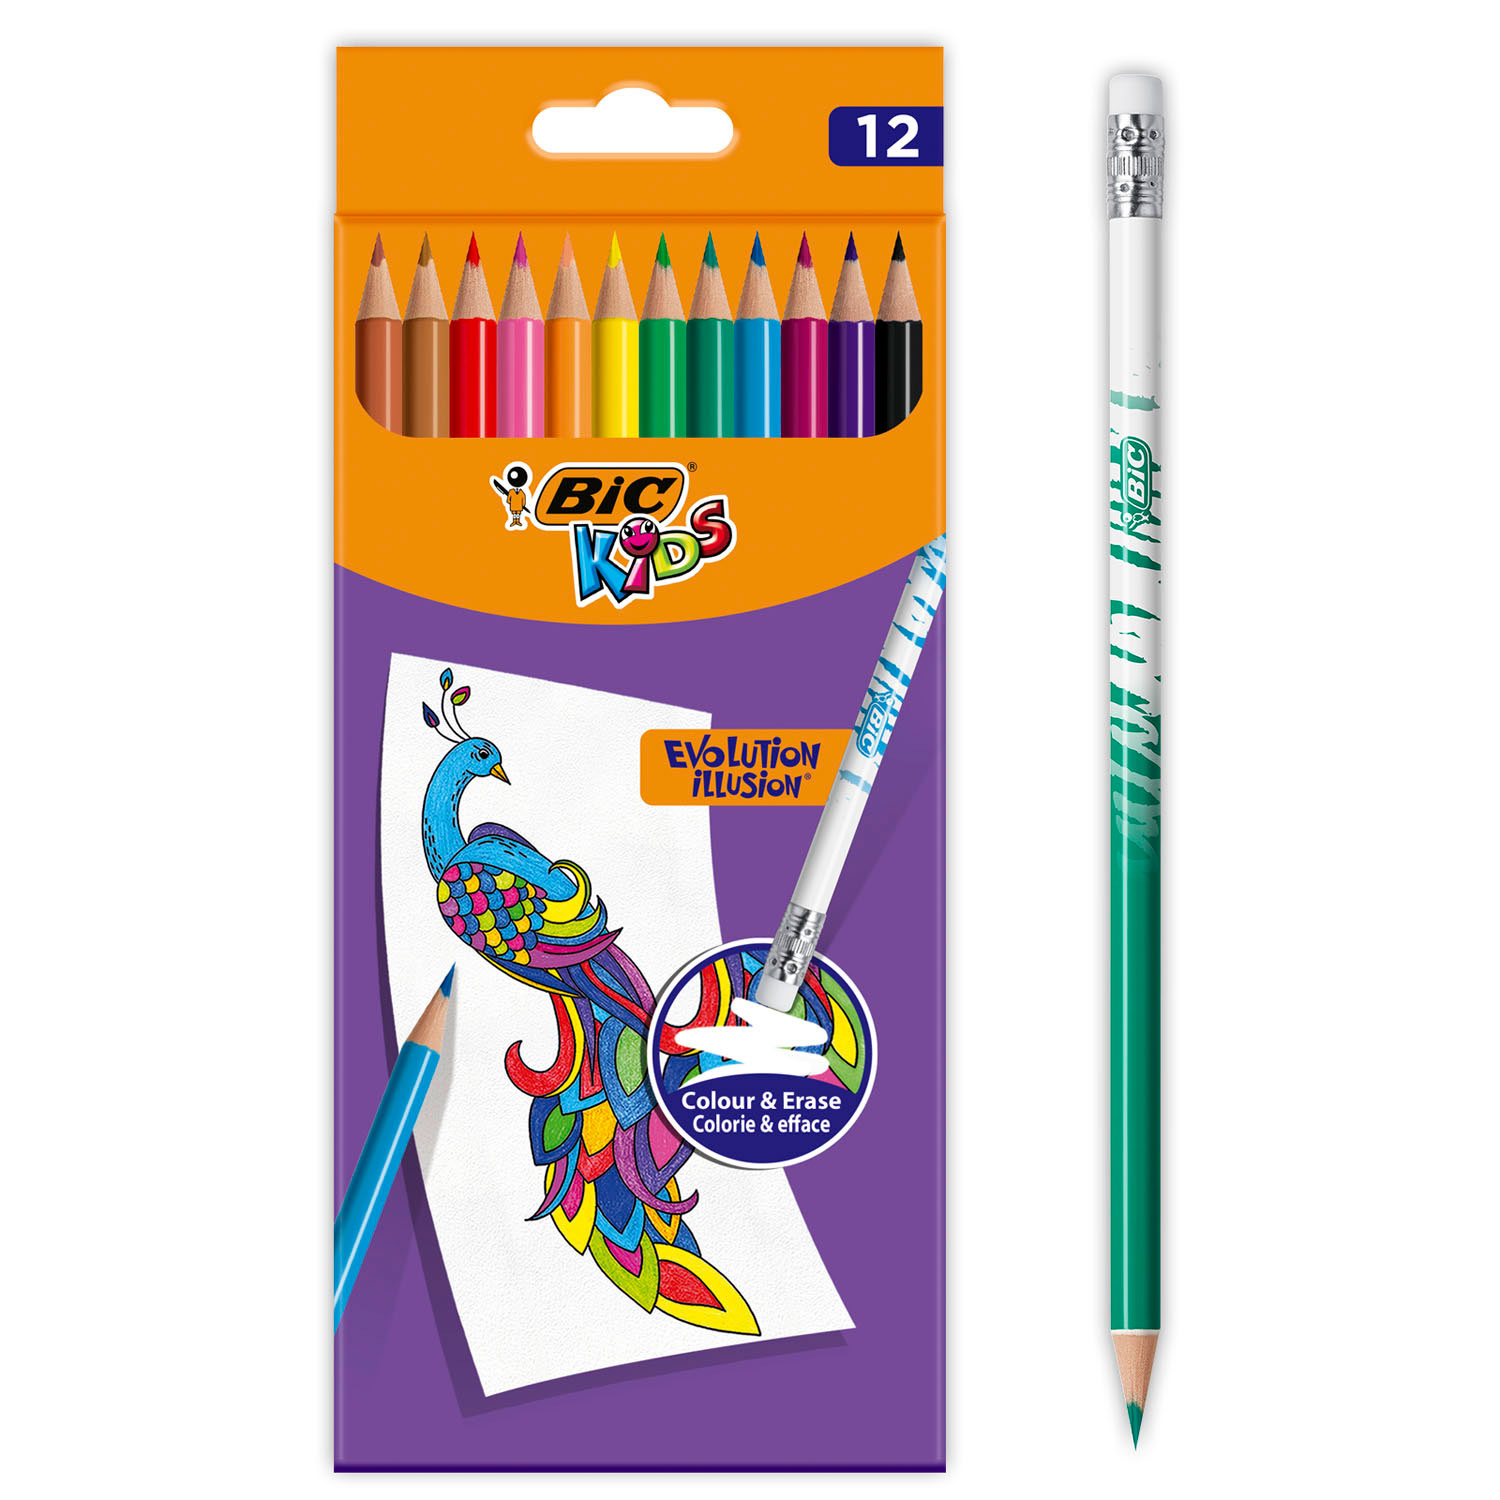 BIC Kids Evolution Erasable Colored Pencils, 12pcs.